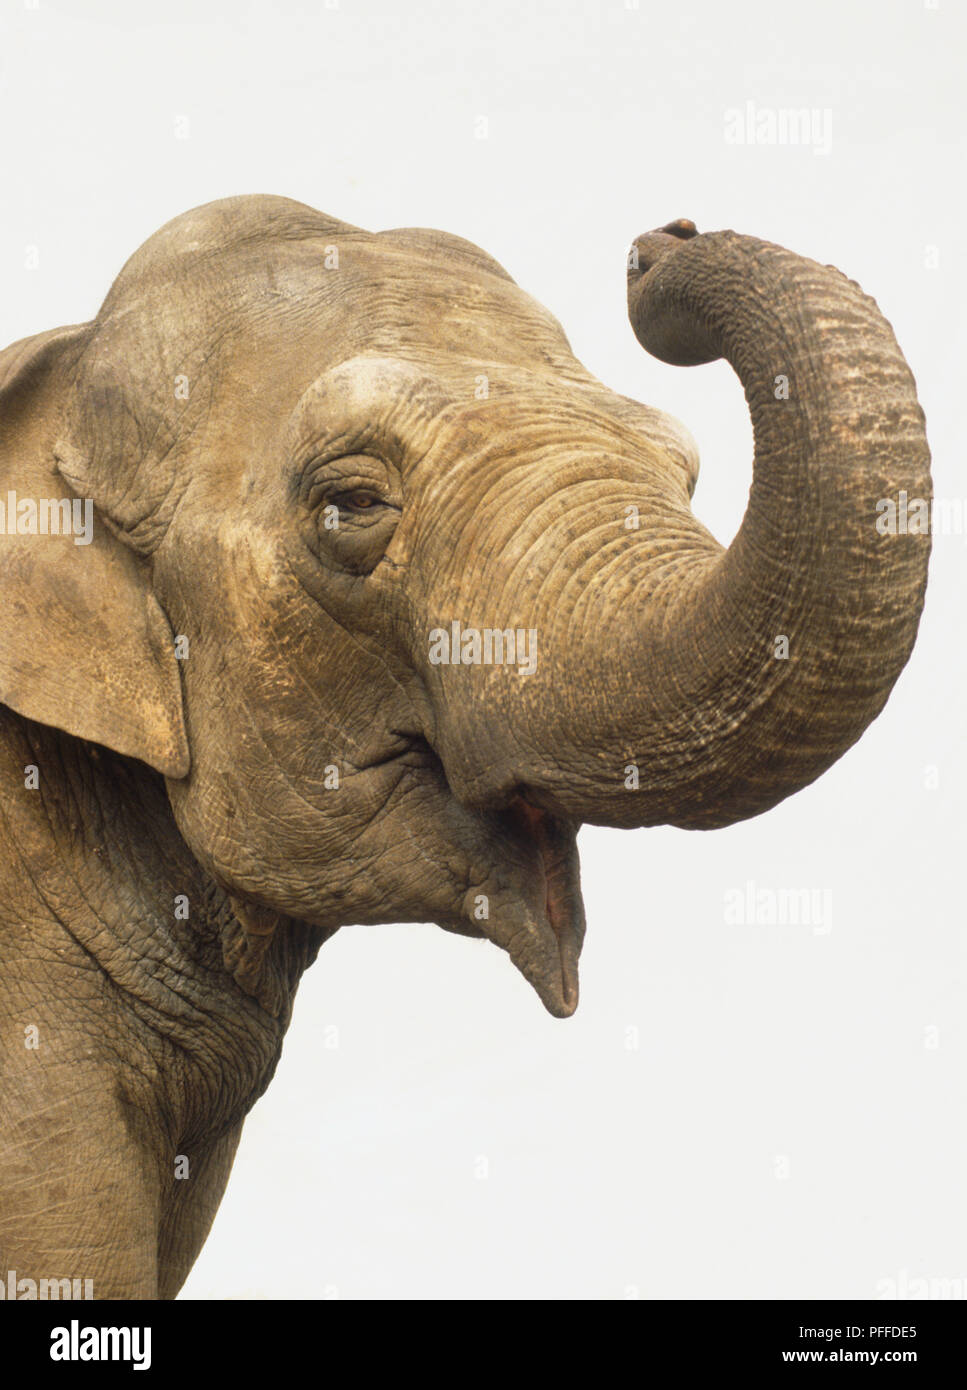 Leiter des Asiatischen Elefanten oder Indischer Elefant, elephas Maximus, Curling in seinem Stamm. Stockfoto